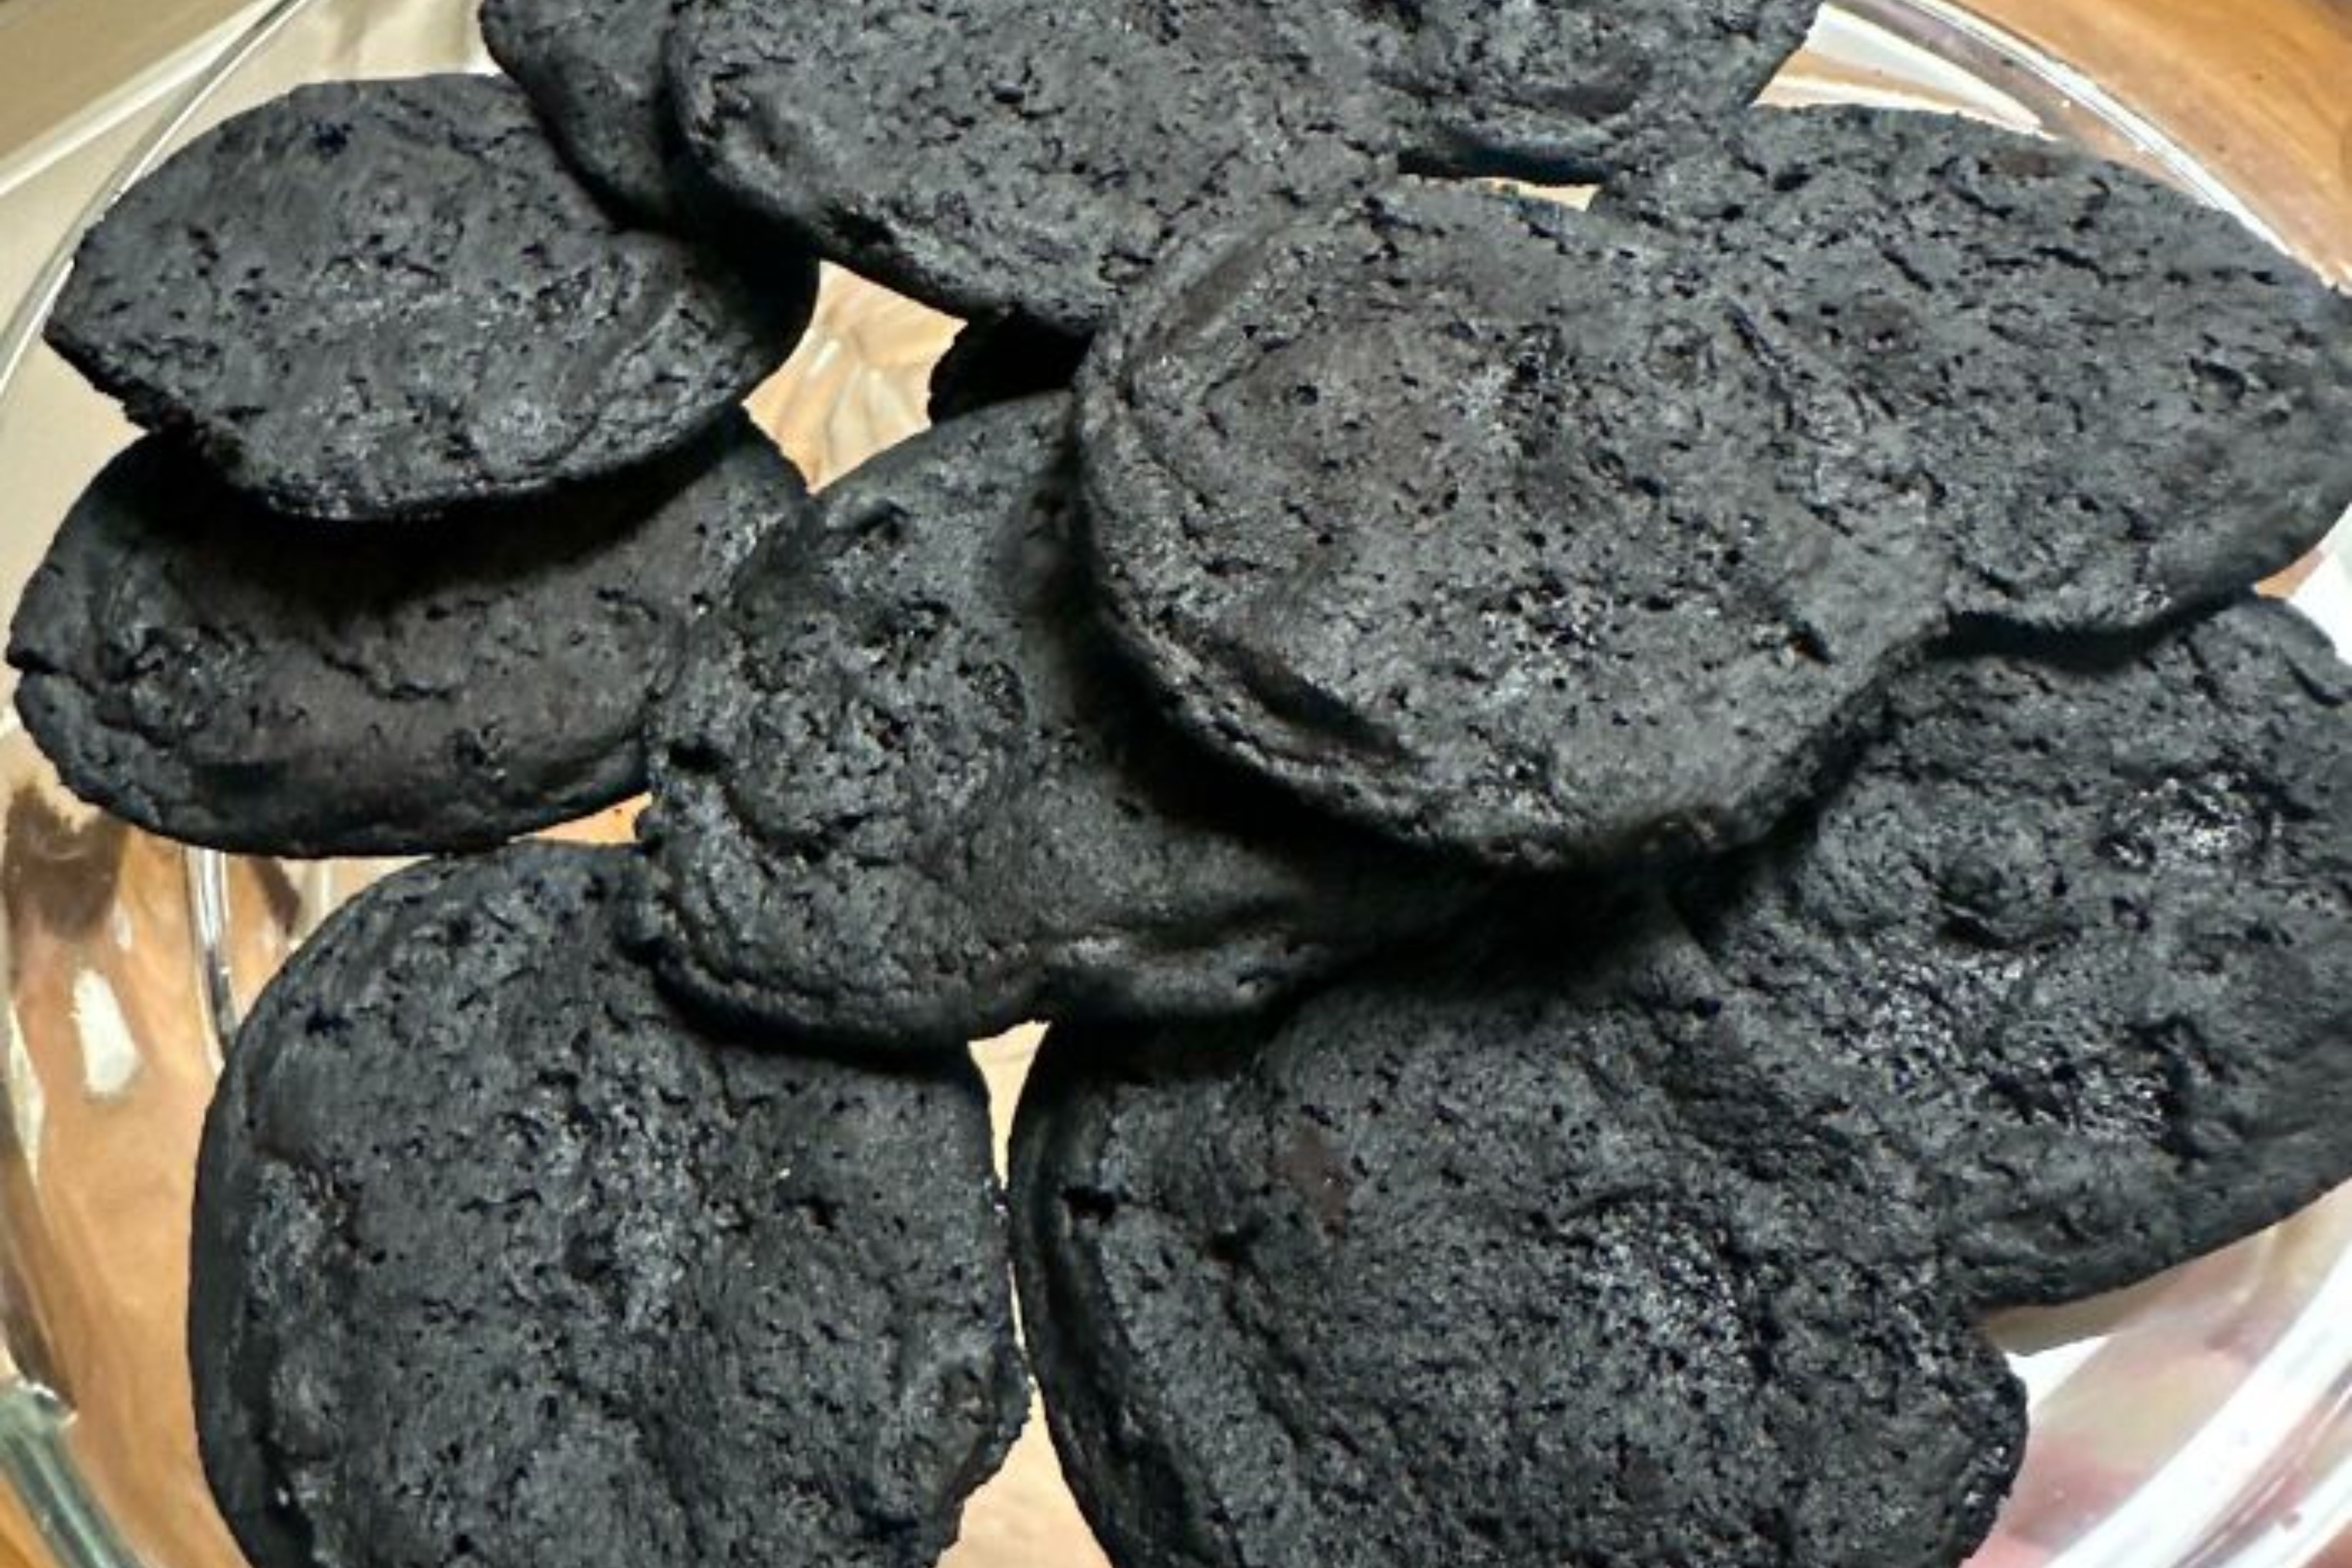 Alguns cookies esquecidos no forno e carbonizados (Reprodução)